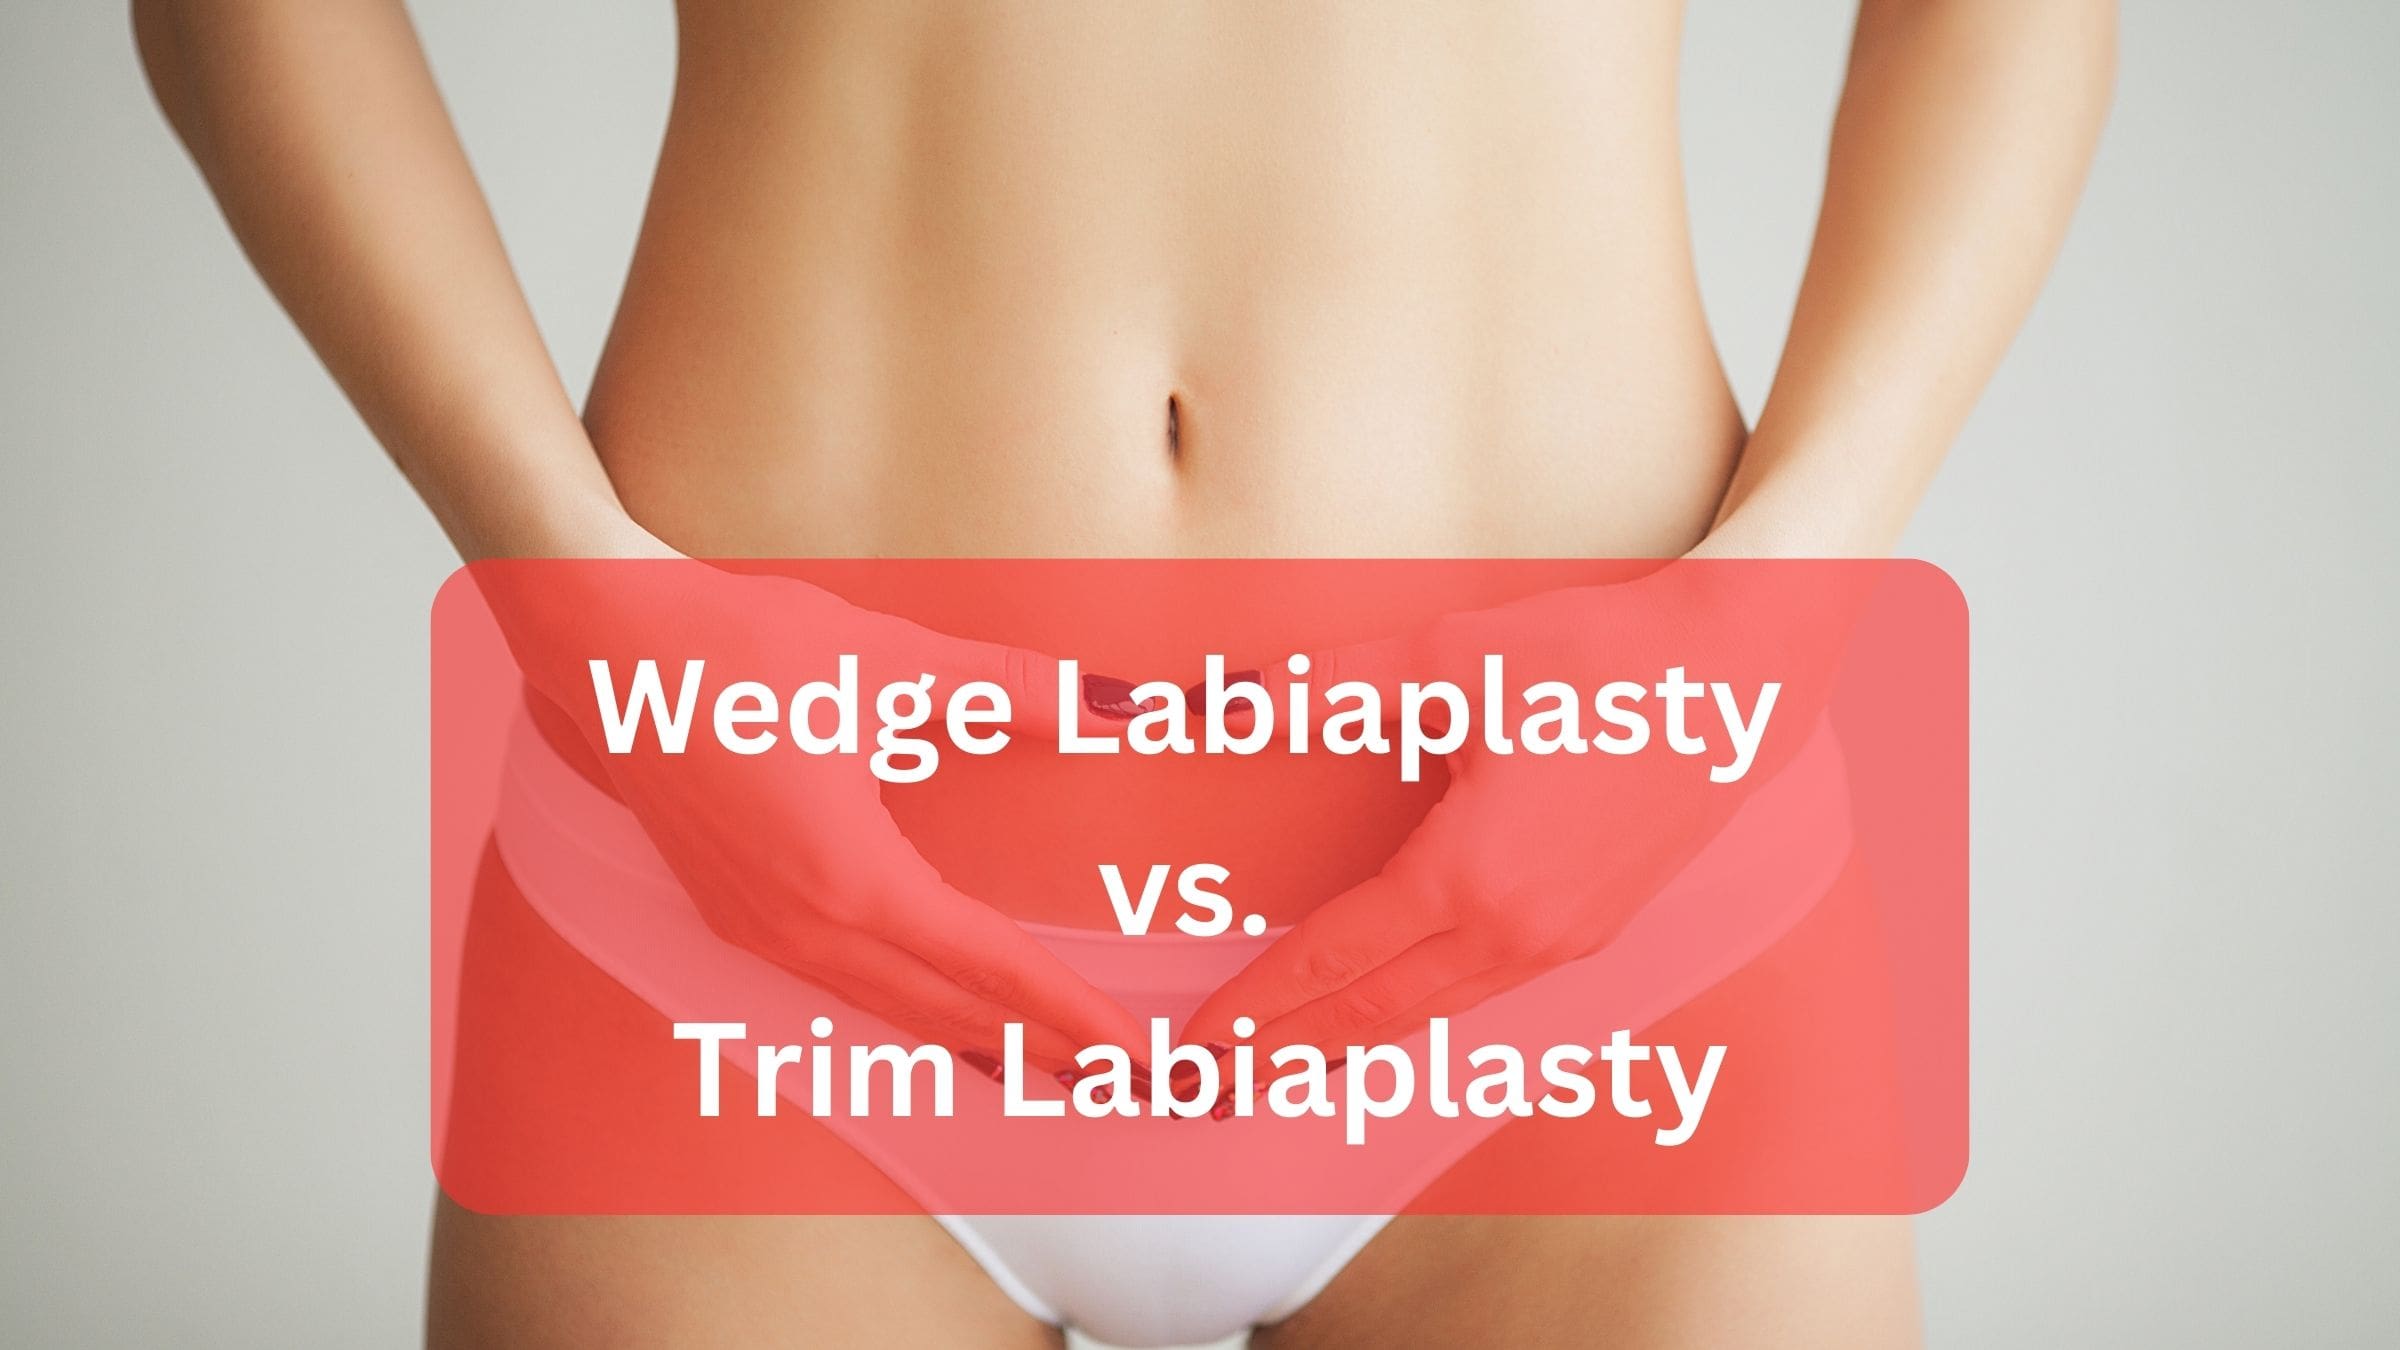 Wedge Labiaplasty vs. Trim Labiaplasty